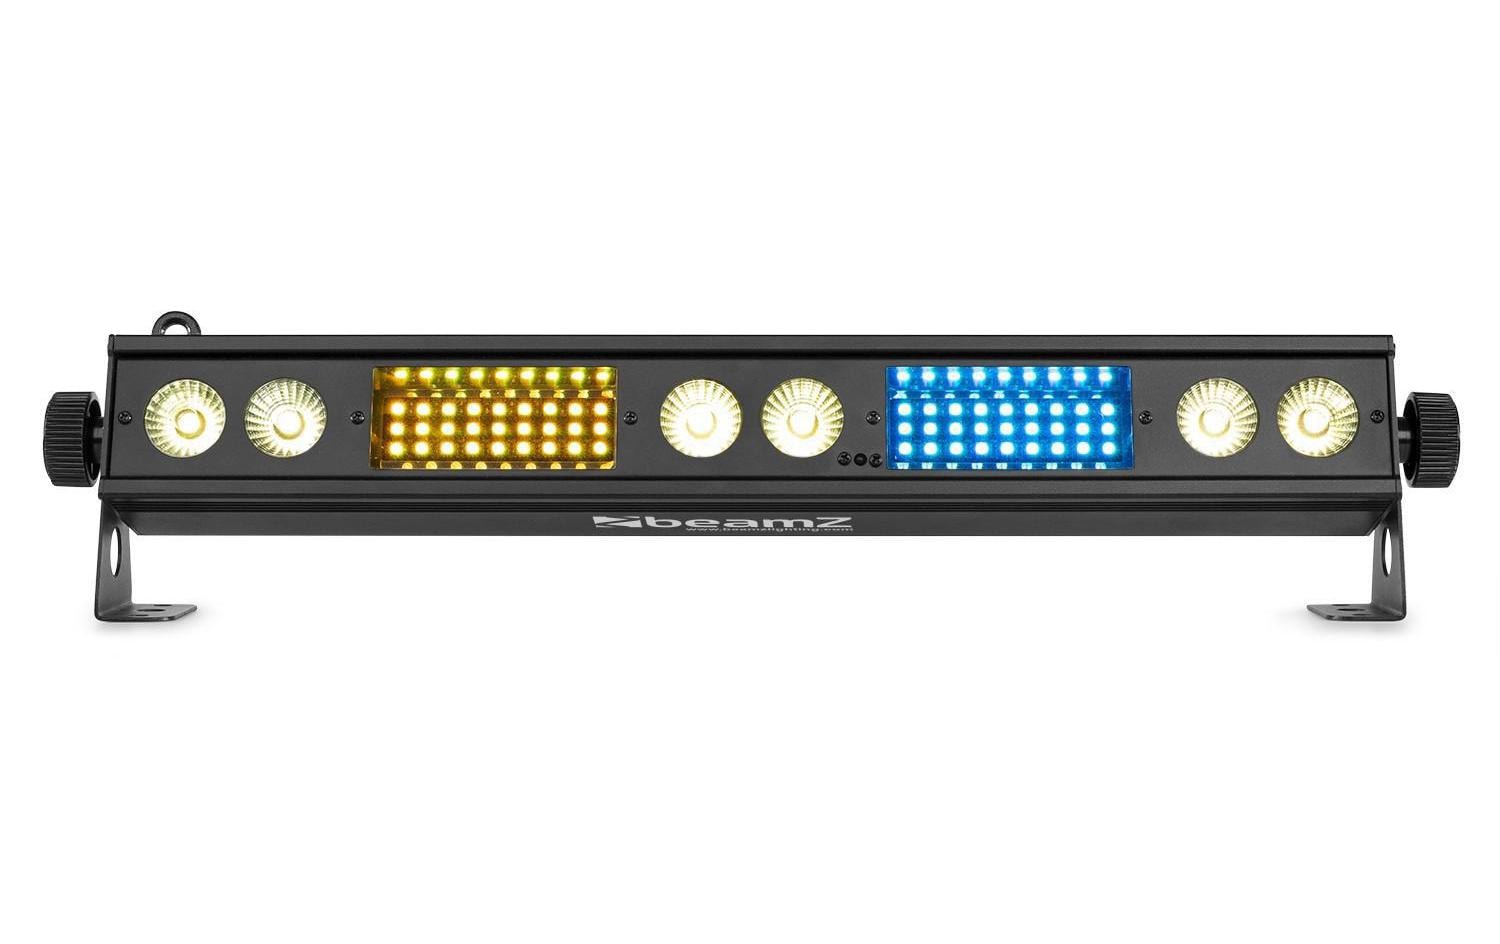 BeamZ LED-Bar LSB340